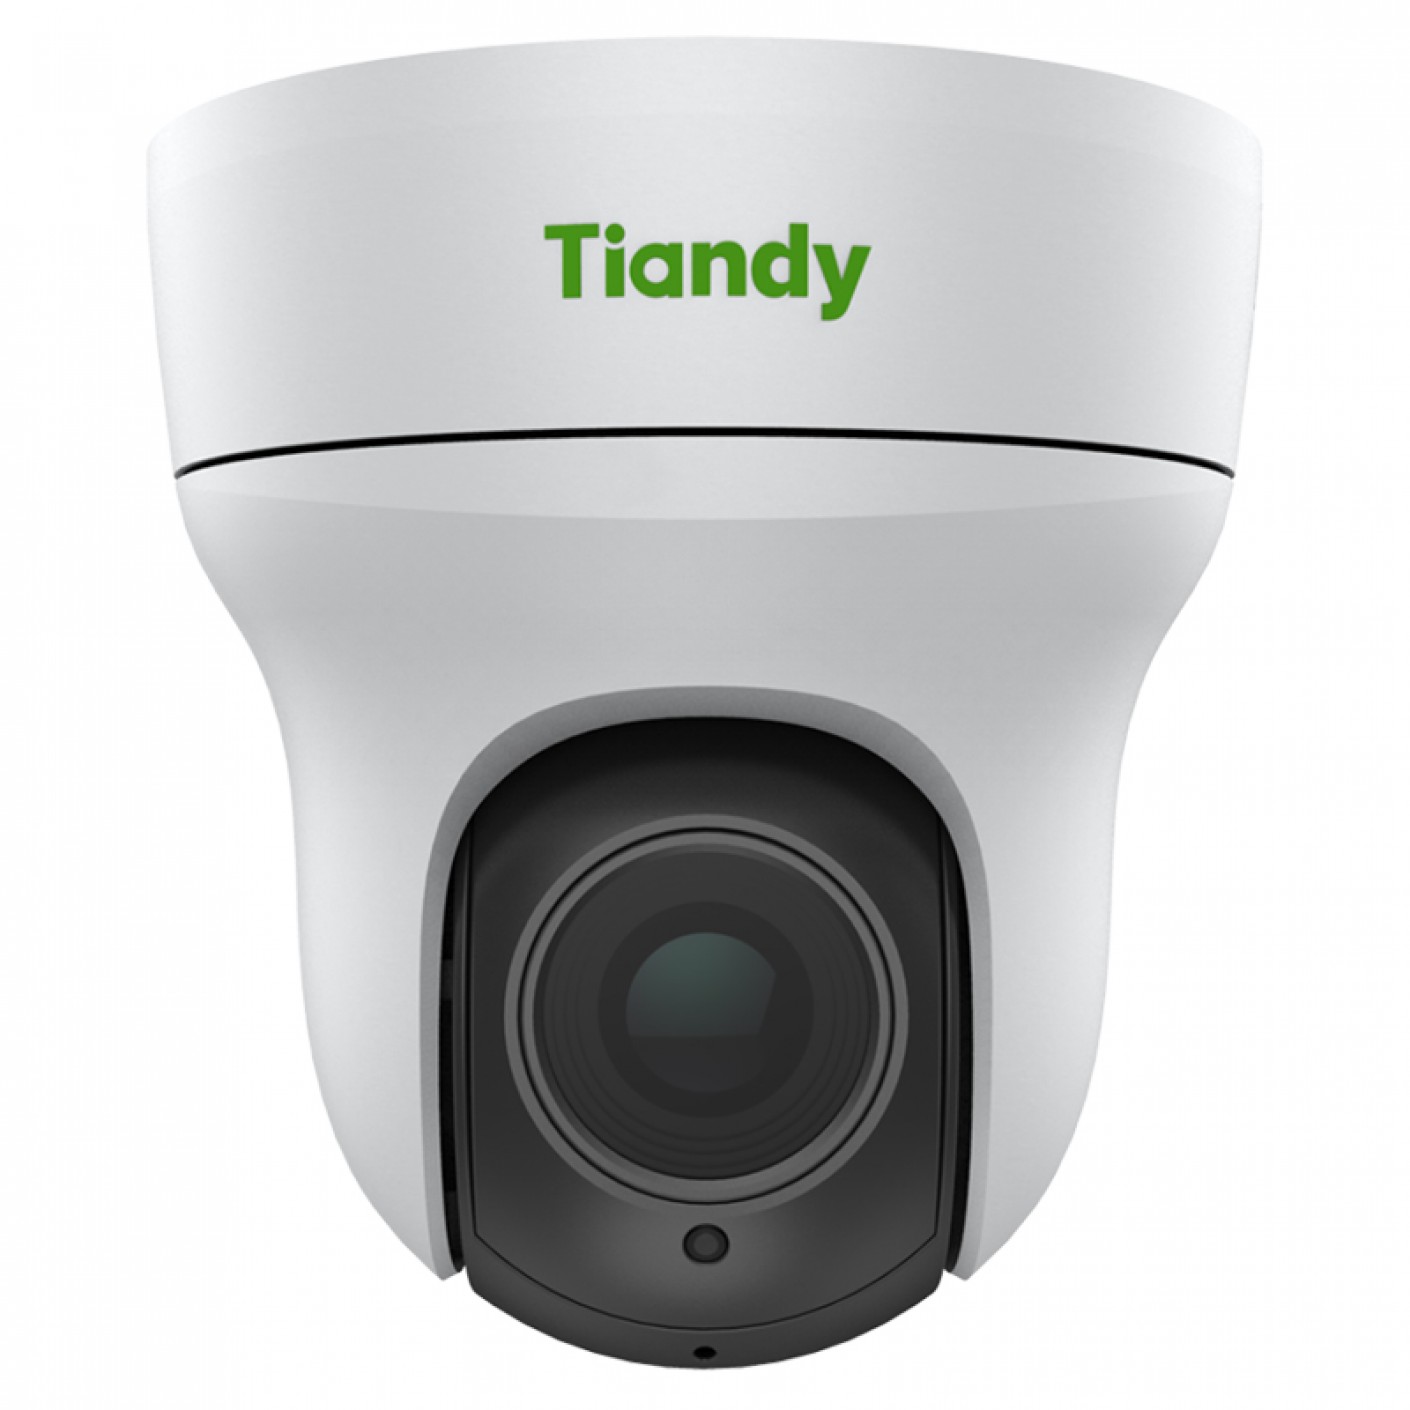 Купить камеру tiandy. Камера видеонаблюдения Tiandy. IP камера Tiandy TC-c32qn. Tiandy TC-r3210 spec:i/f. Tiandy TC-r3210 spec:i/b/p8/k.